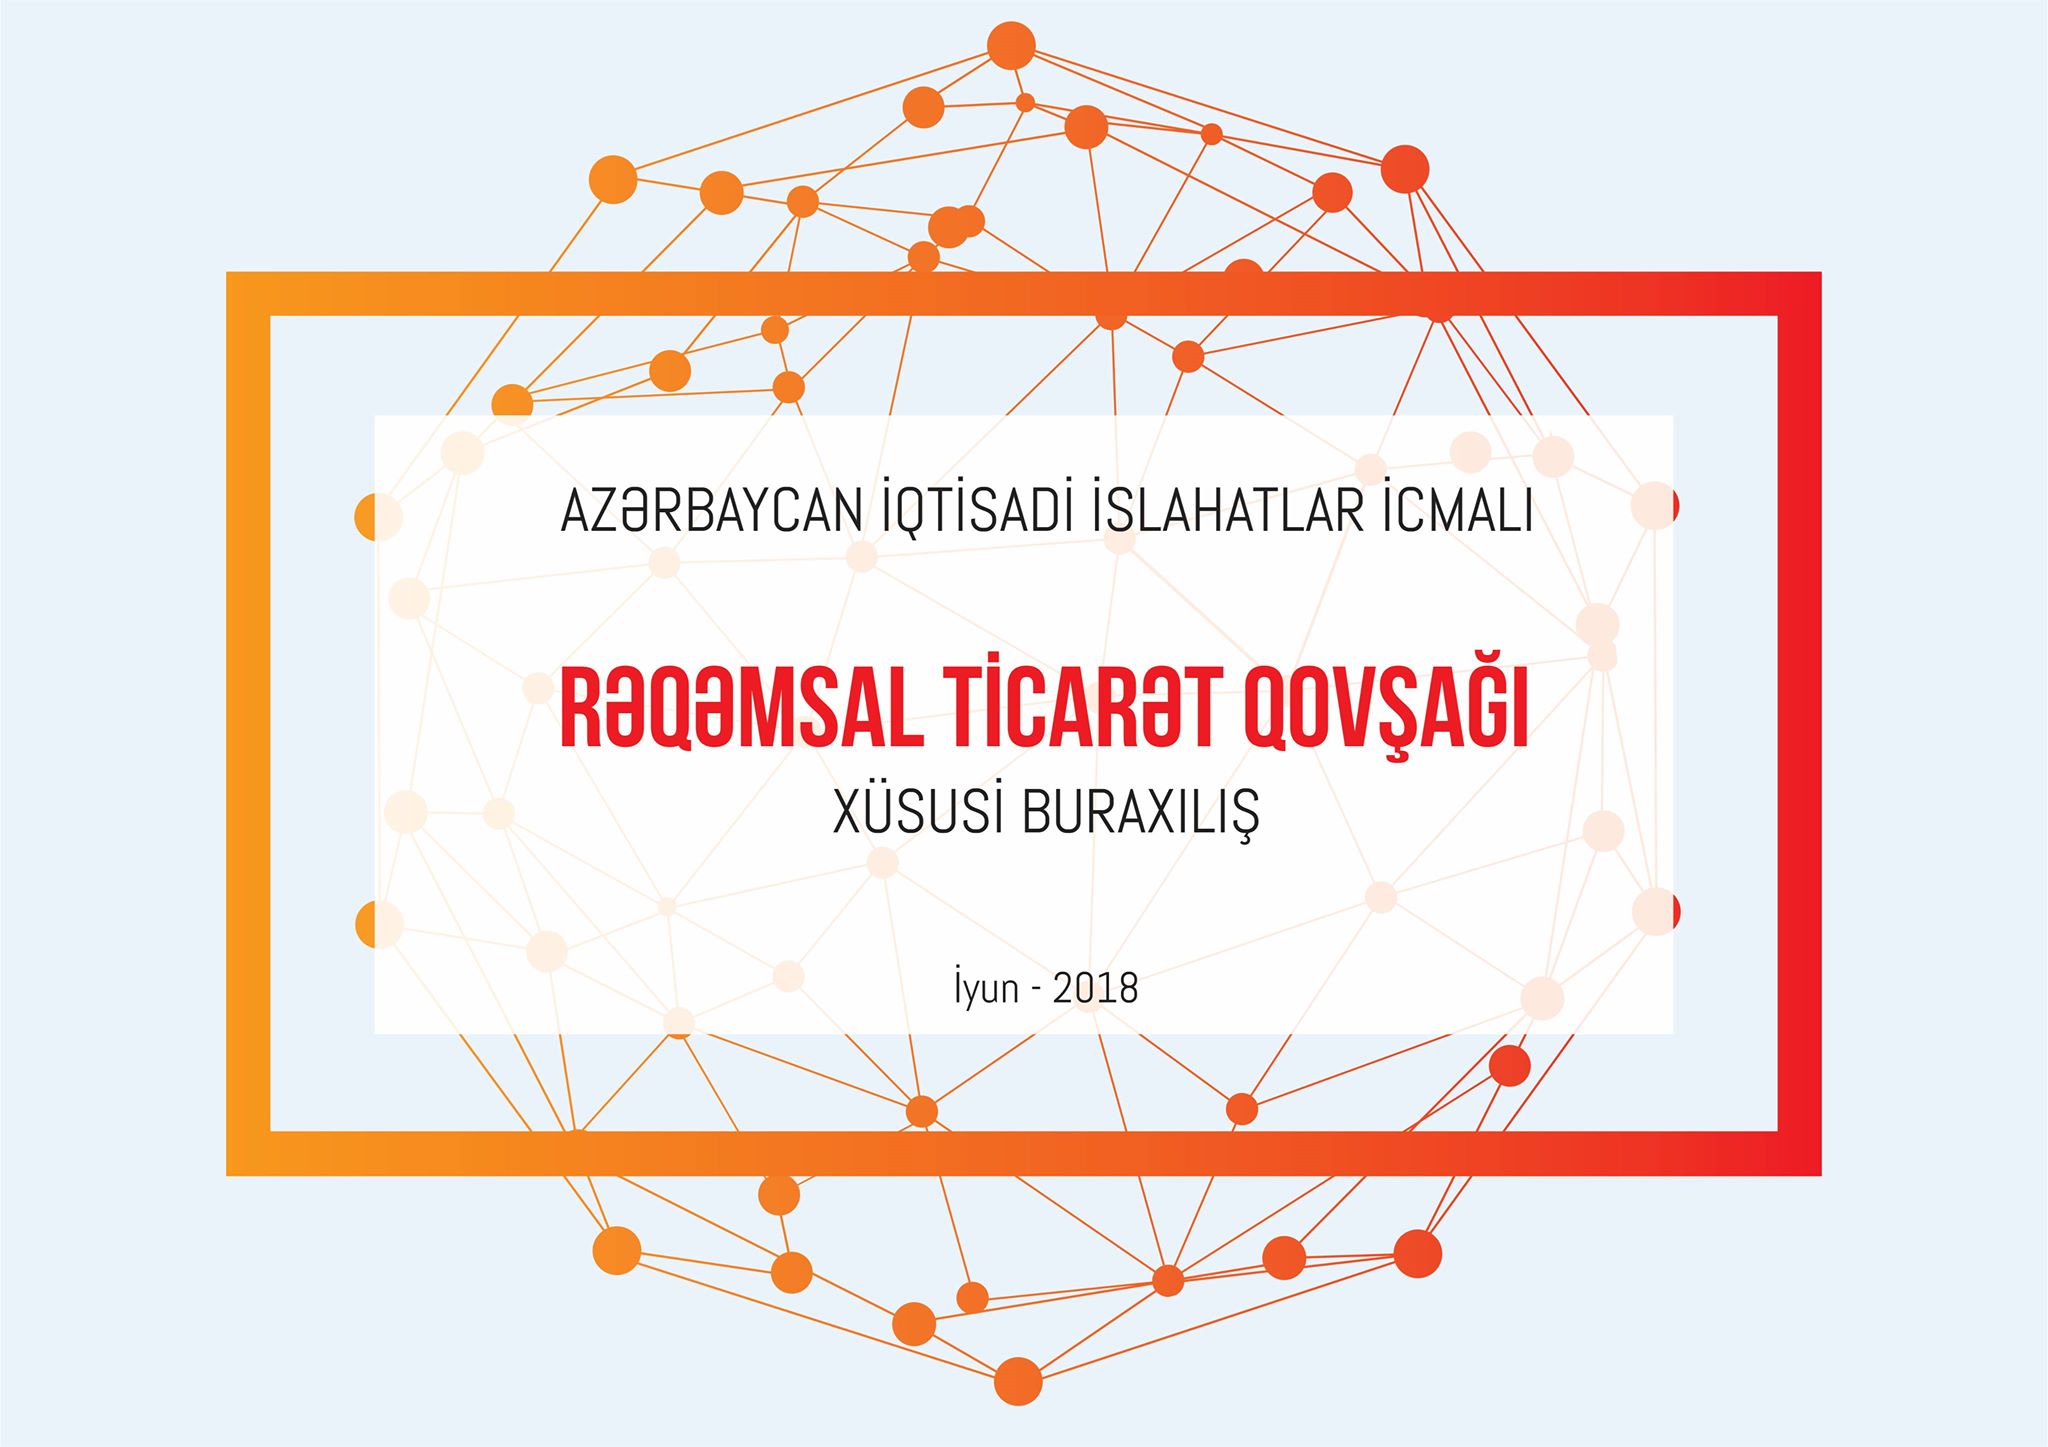 “İslahatlar İcmalı”nın xüsusi buraxılışı Rəqəmsal Ticarət Qovşağına həsr olunub